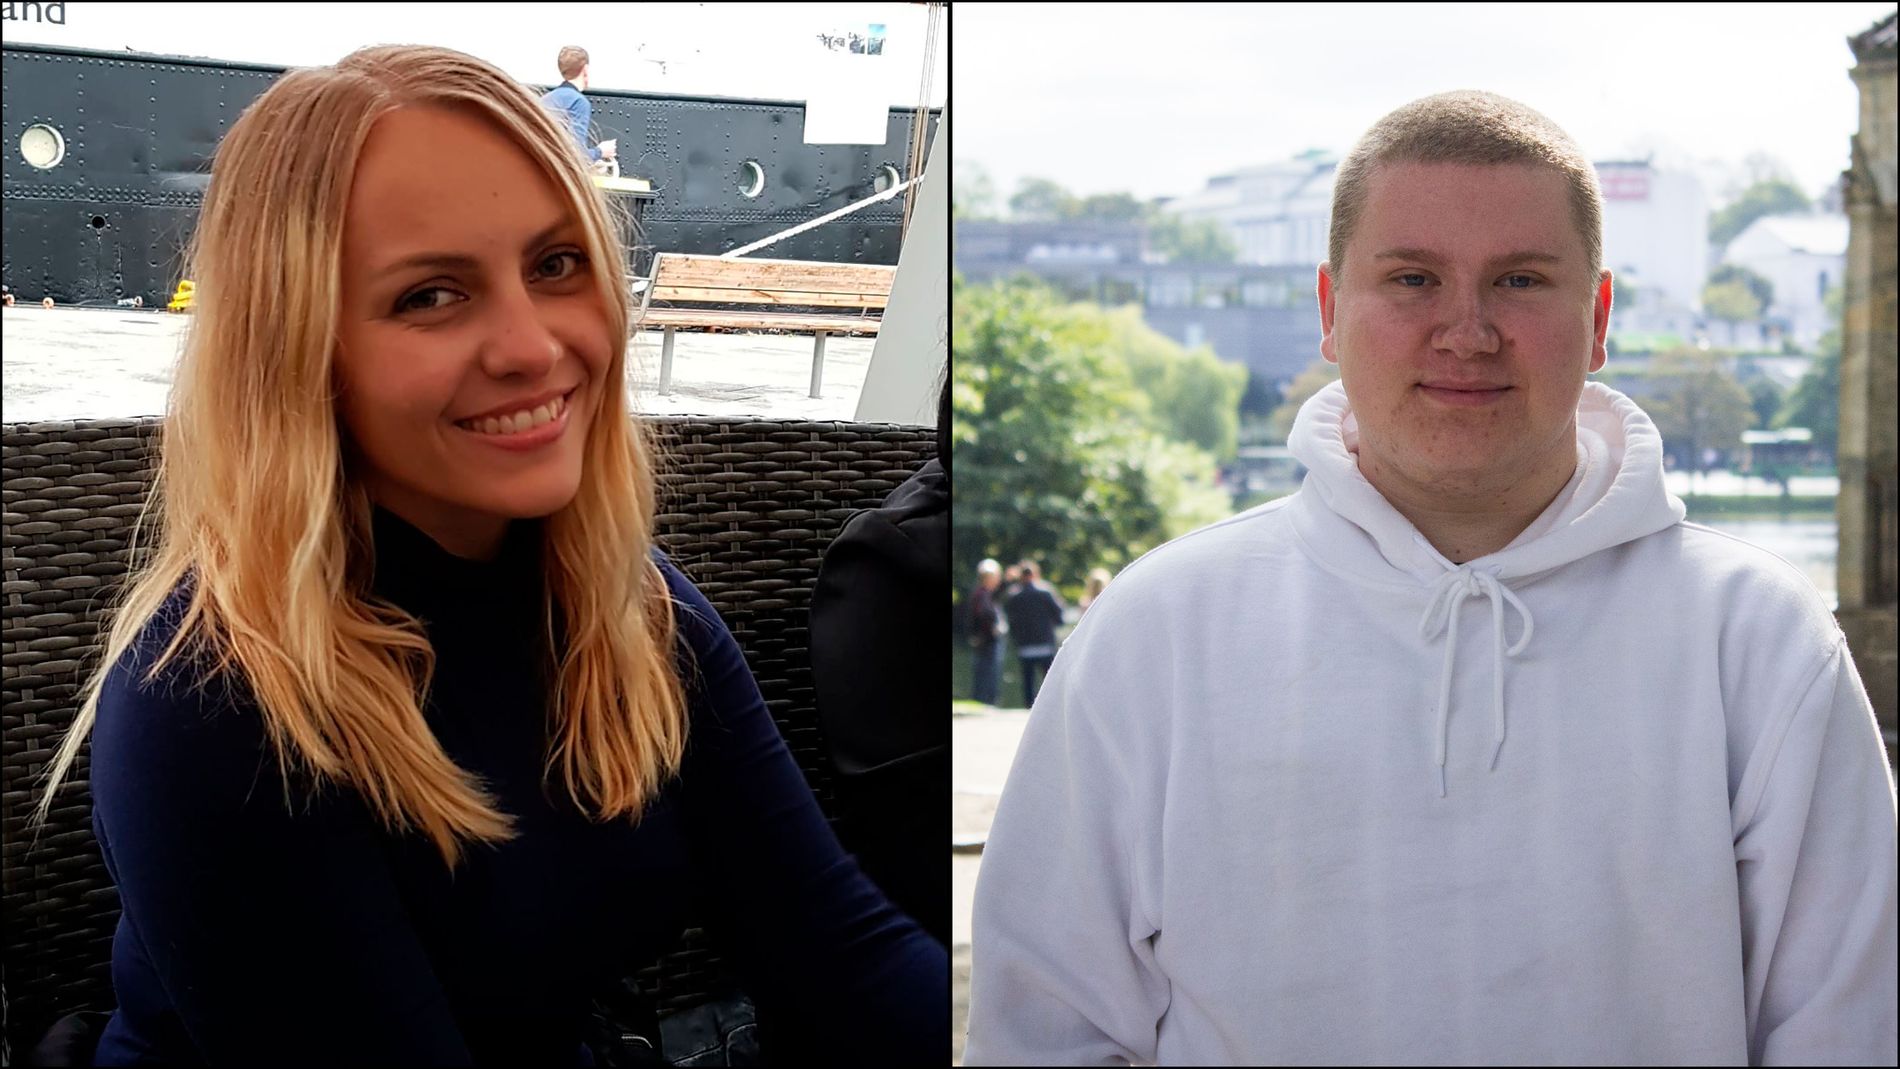  Da Grethe Marie Strøm (27) og Oscar Tjåland (18) kom ut av skapet, var en god venn den første de fortalte det til.  